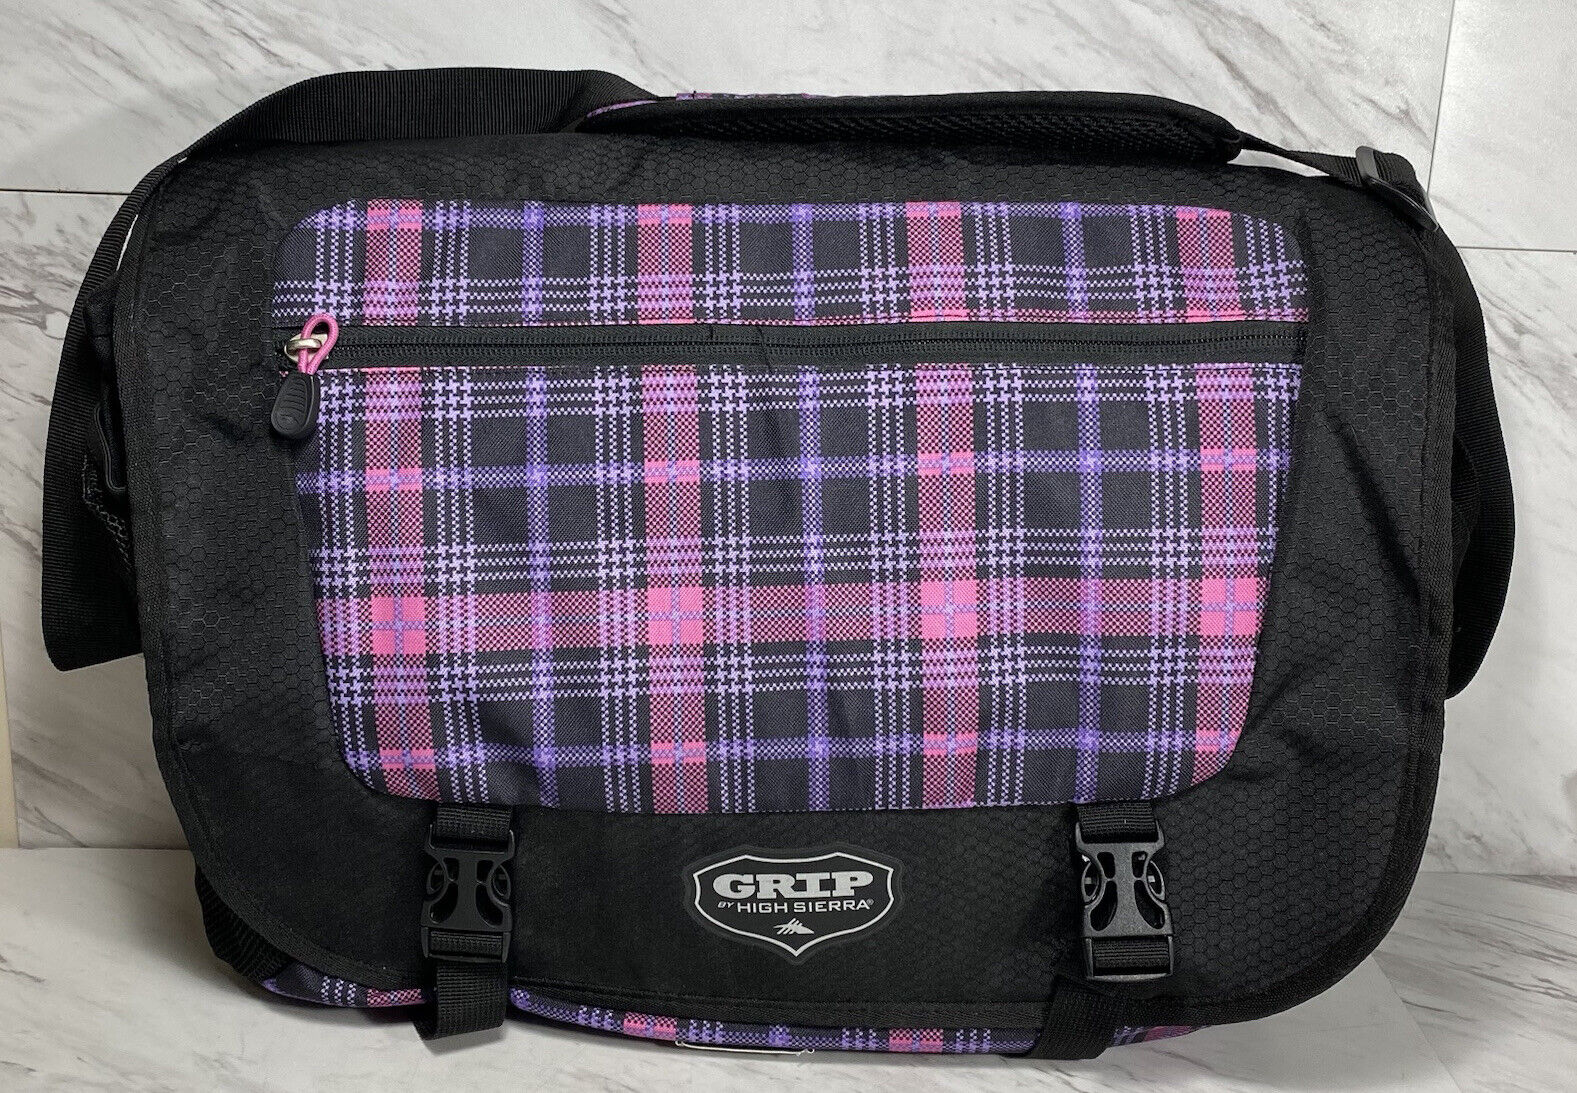 Large Grip High Sierra Messenger Shoulder Bag Purple Pink Plaid Black Laptop Bag